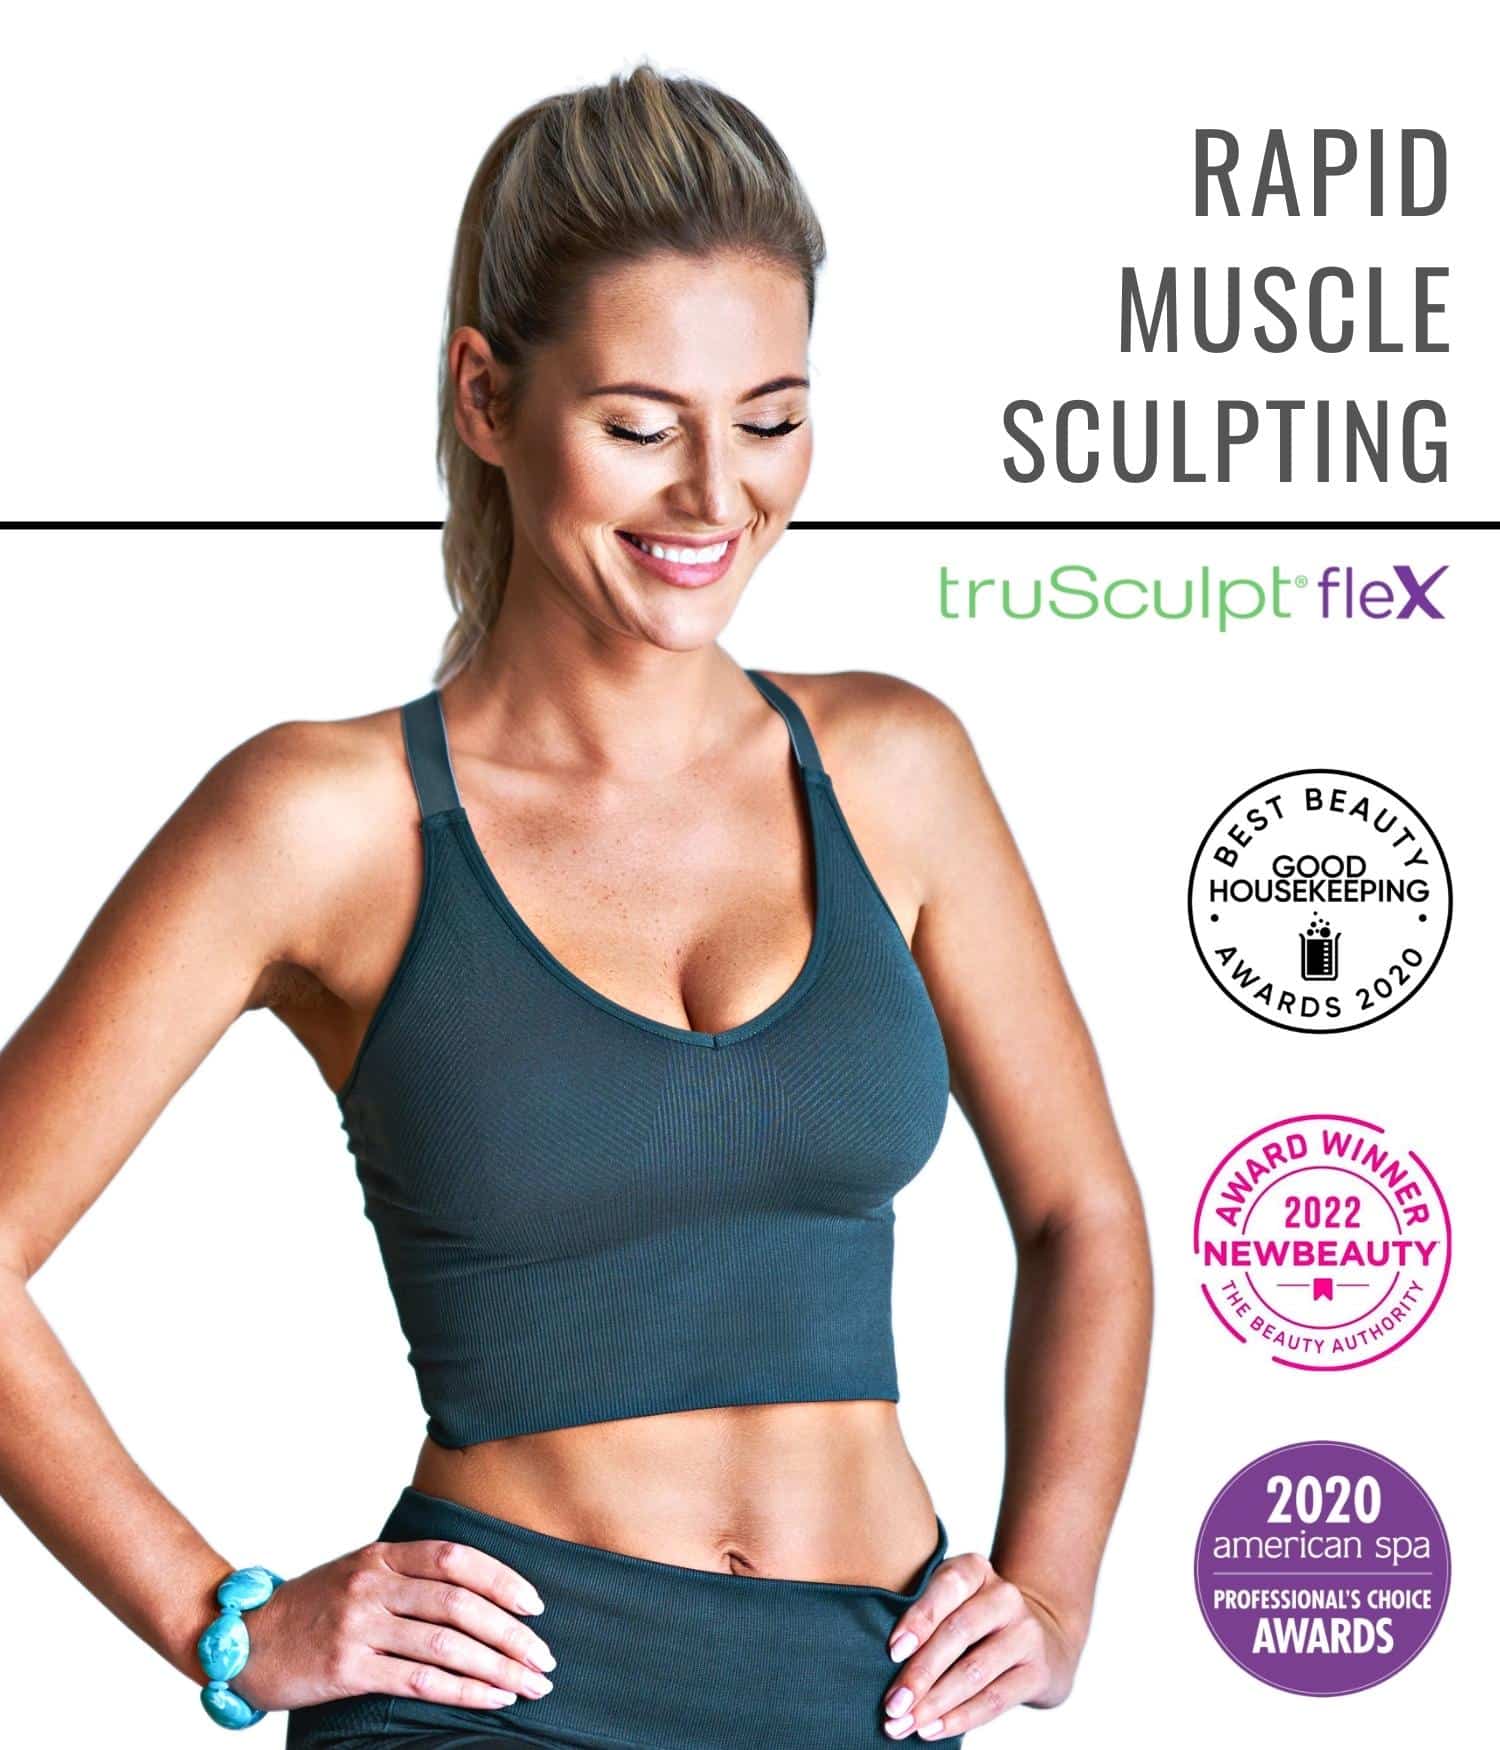 Portrait of a fit woman promoting TruSculpt Flex treatment